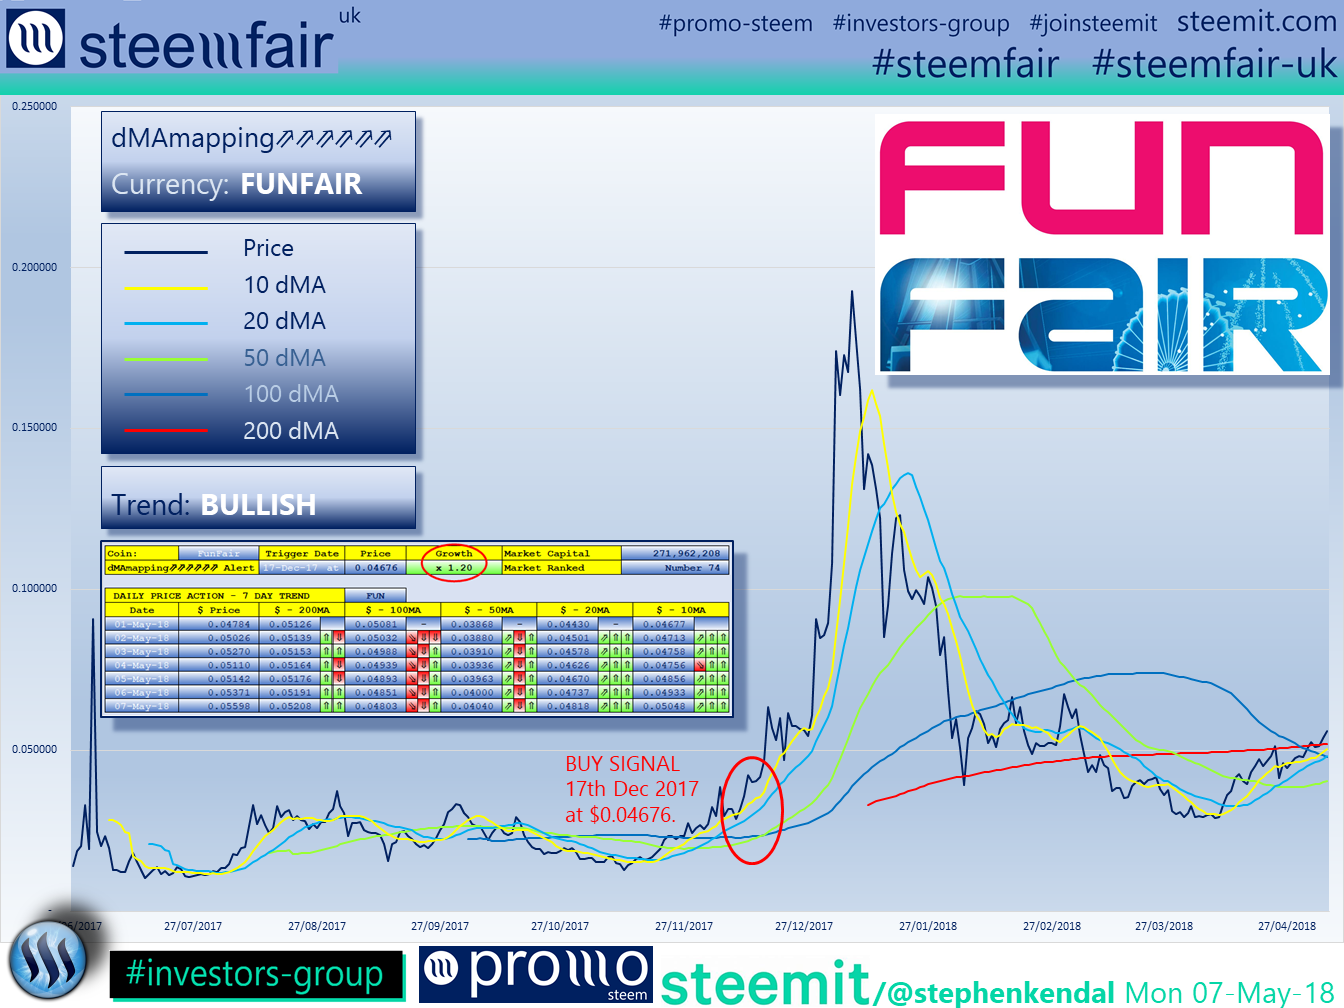 SteemFair SteemFair-uk Promo-Steem Investors-Group FunFair